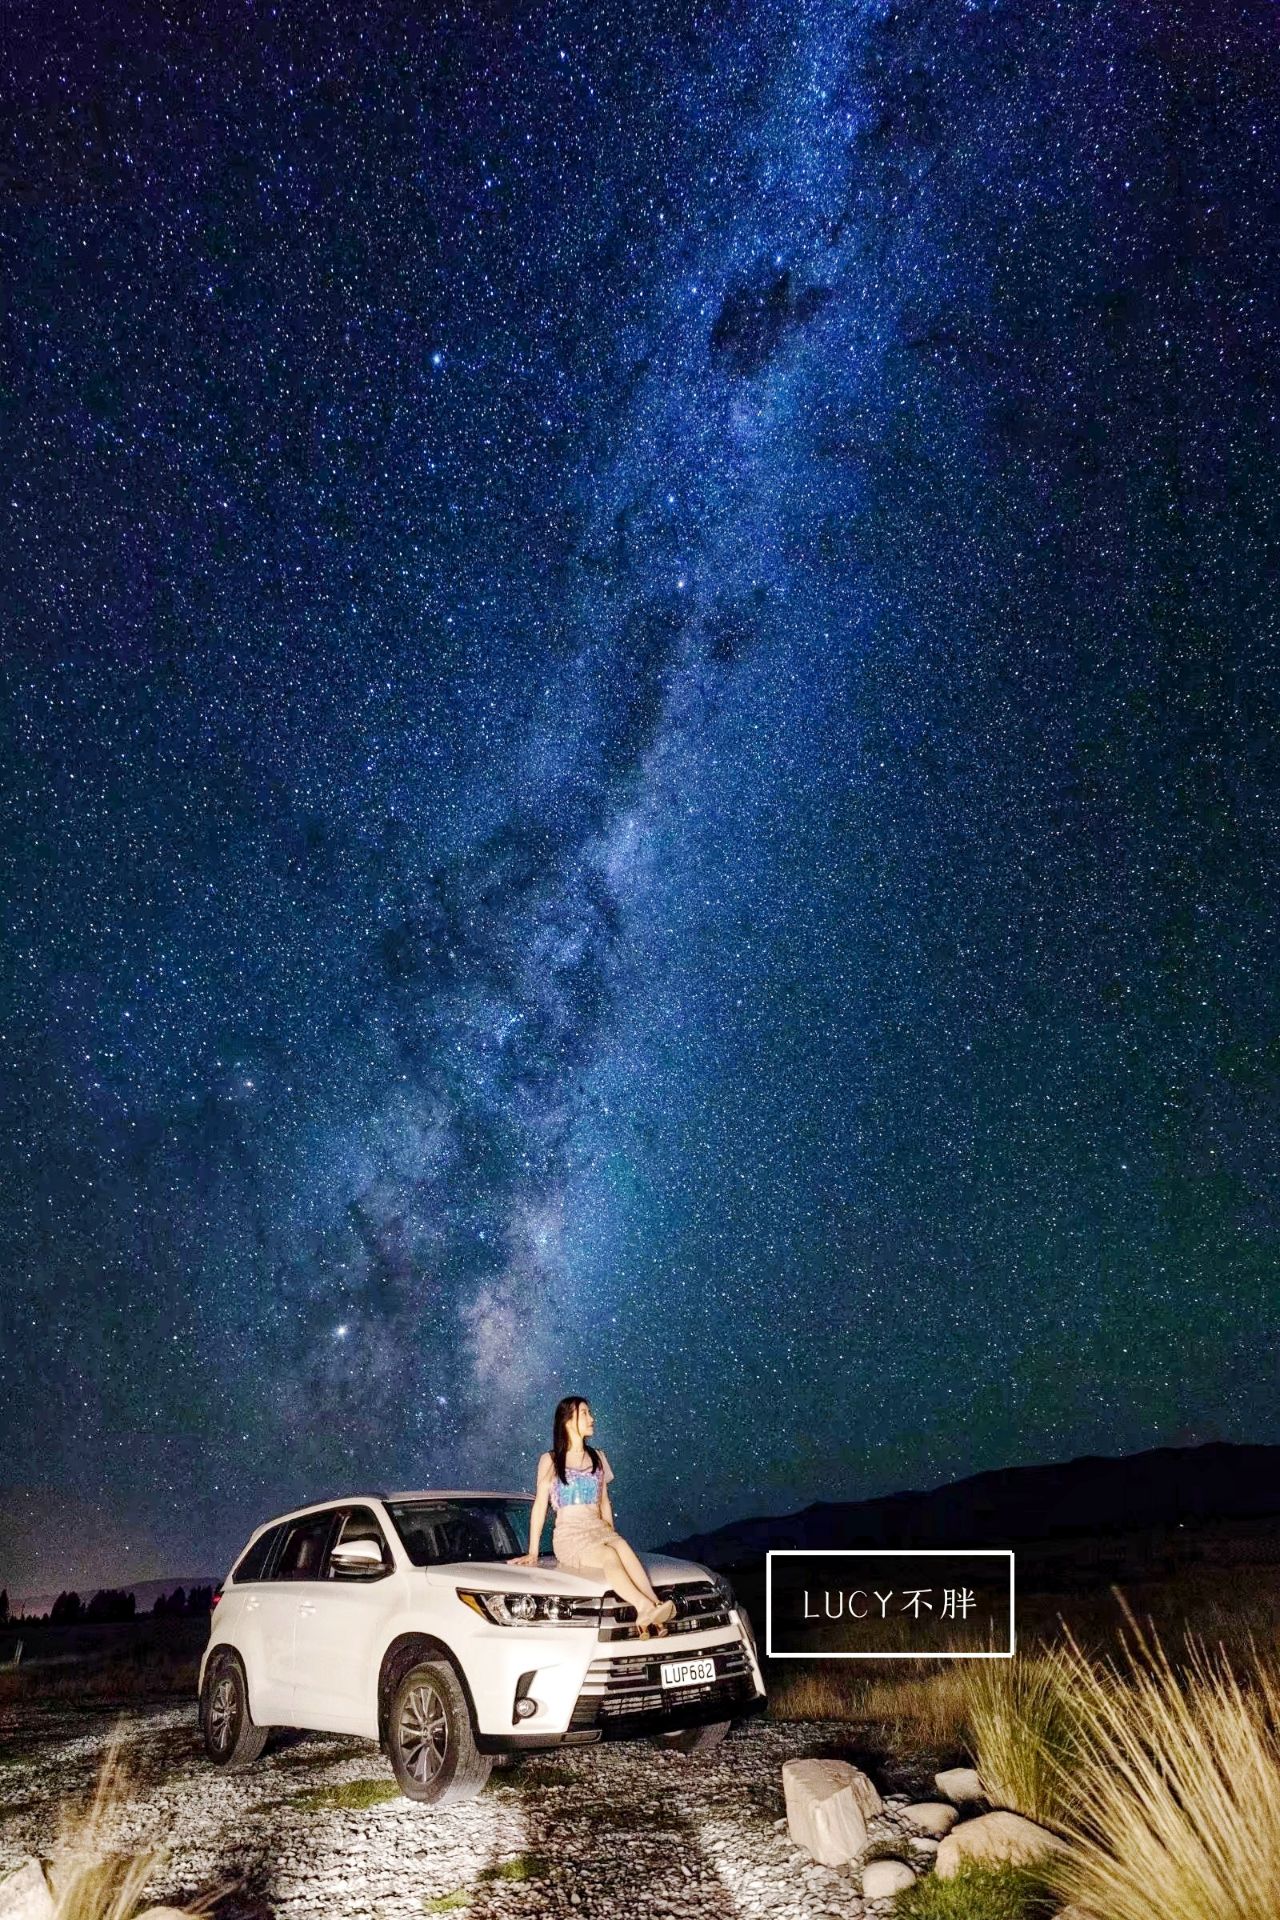 新西兰荒野上的美式乡村木屋🌟肉眼可见浩瀚银河  很多人去新西兰南岛必定会安排一晚看星空吧？关于看星空